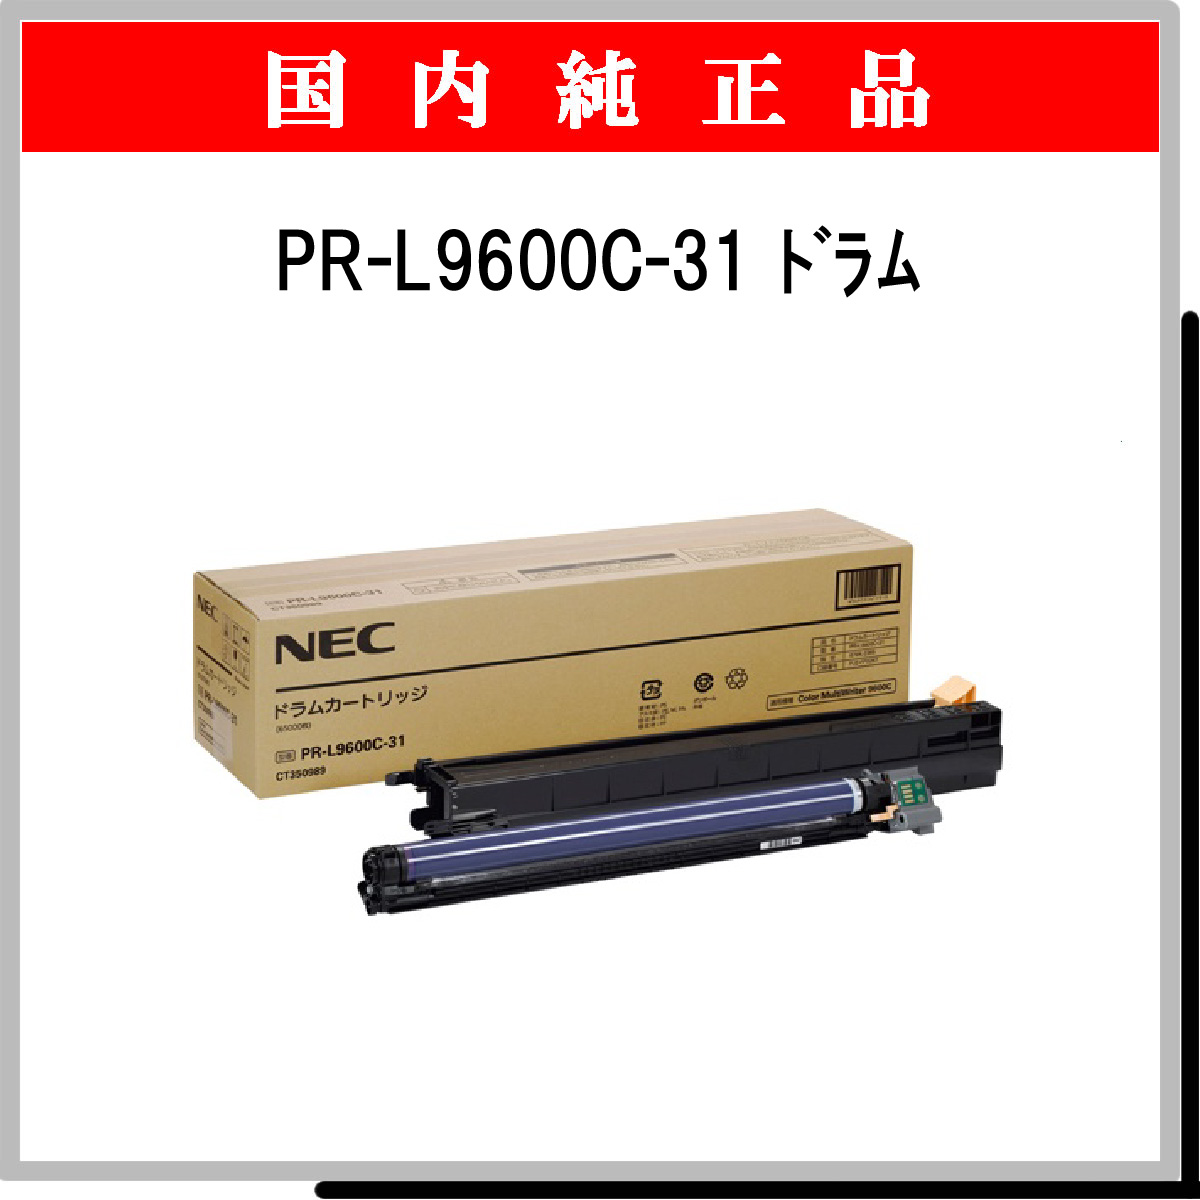 PR-L9600C-31 純正